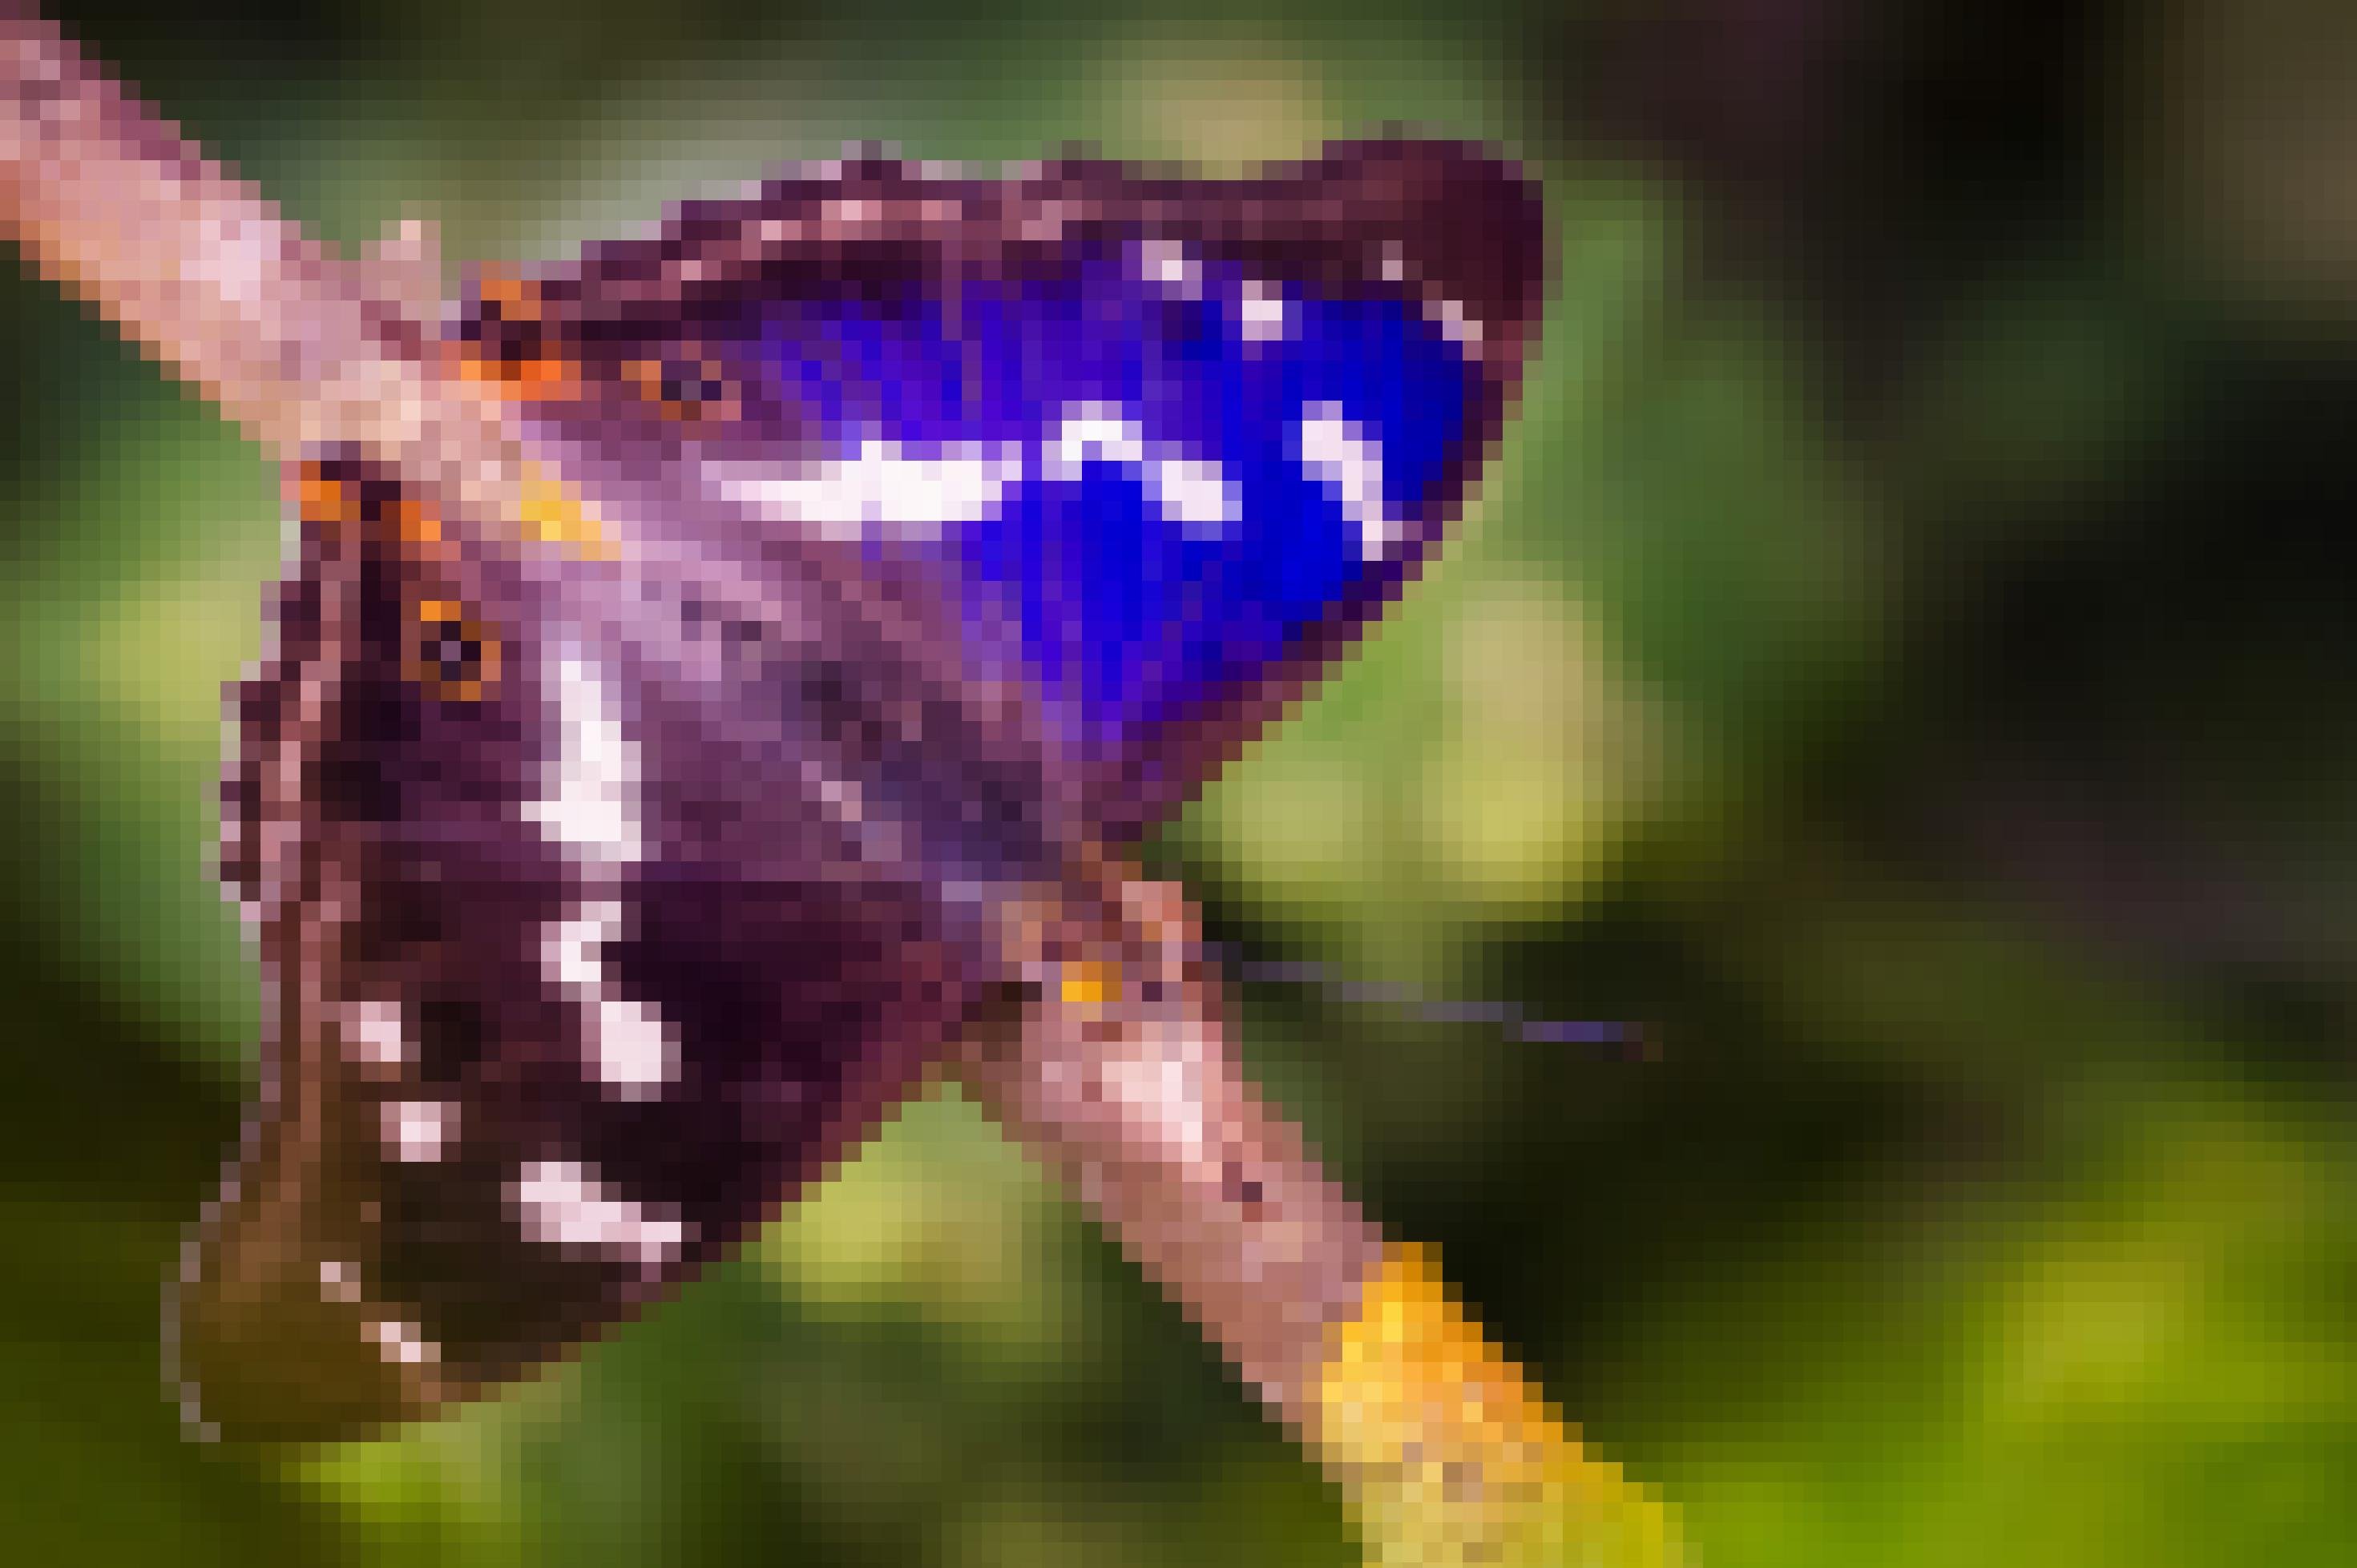 Ein Falter sitzt auf einem Ast. Sein linker Flügel leuchtet blau, sein rechter sieht schwarz aus. Weiße Muster und zwei Augenpunkte zieren die Flügel.